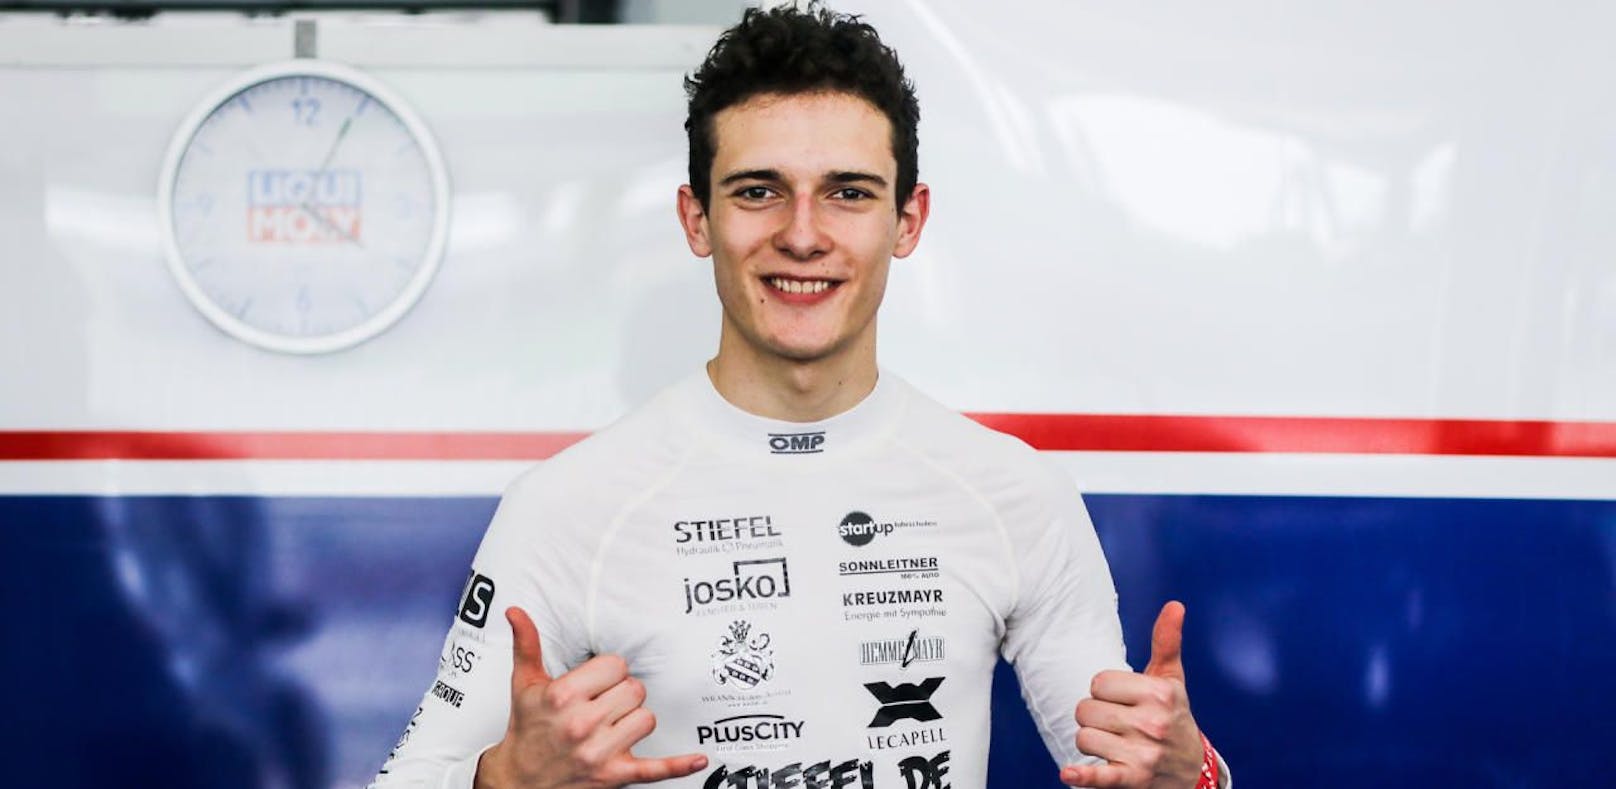 Der 18-Jährige fährt erst seine dritte Saison im Automobilsport. Nach zehn erfolgreichen Jahren im Kart wechselte er 2018 in die britische Formel Ford und wurde gleich Rookie-Champion.